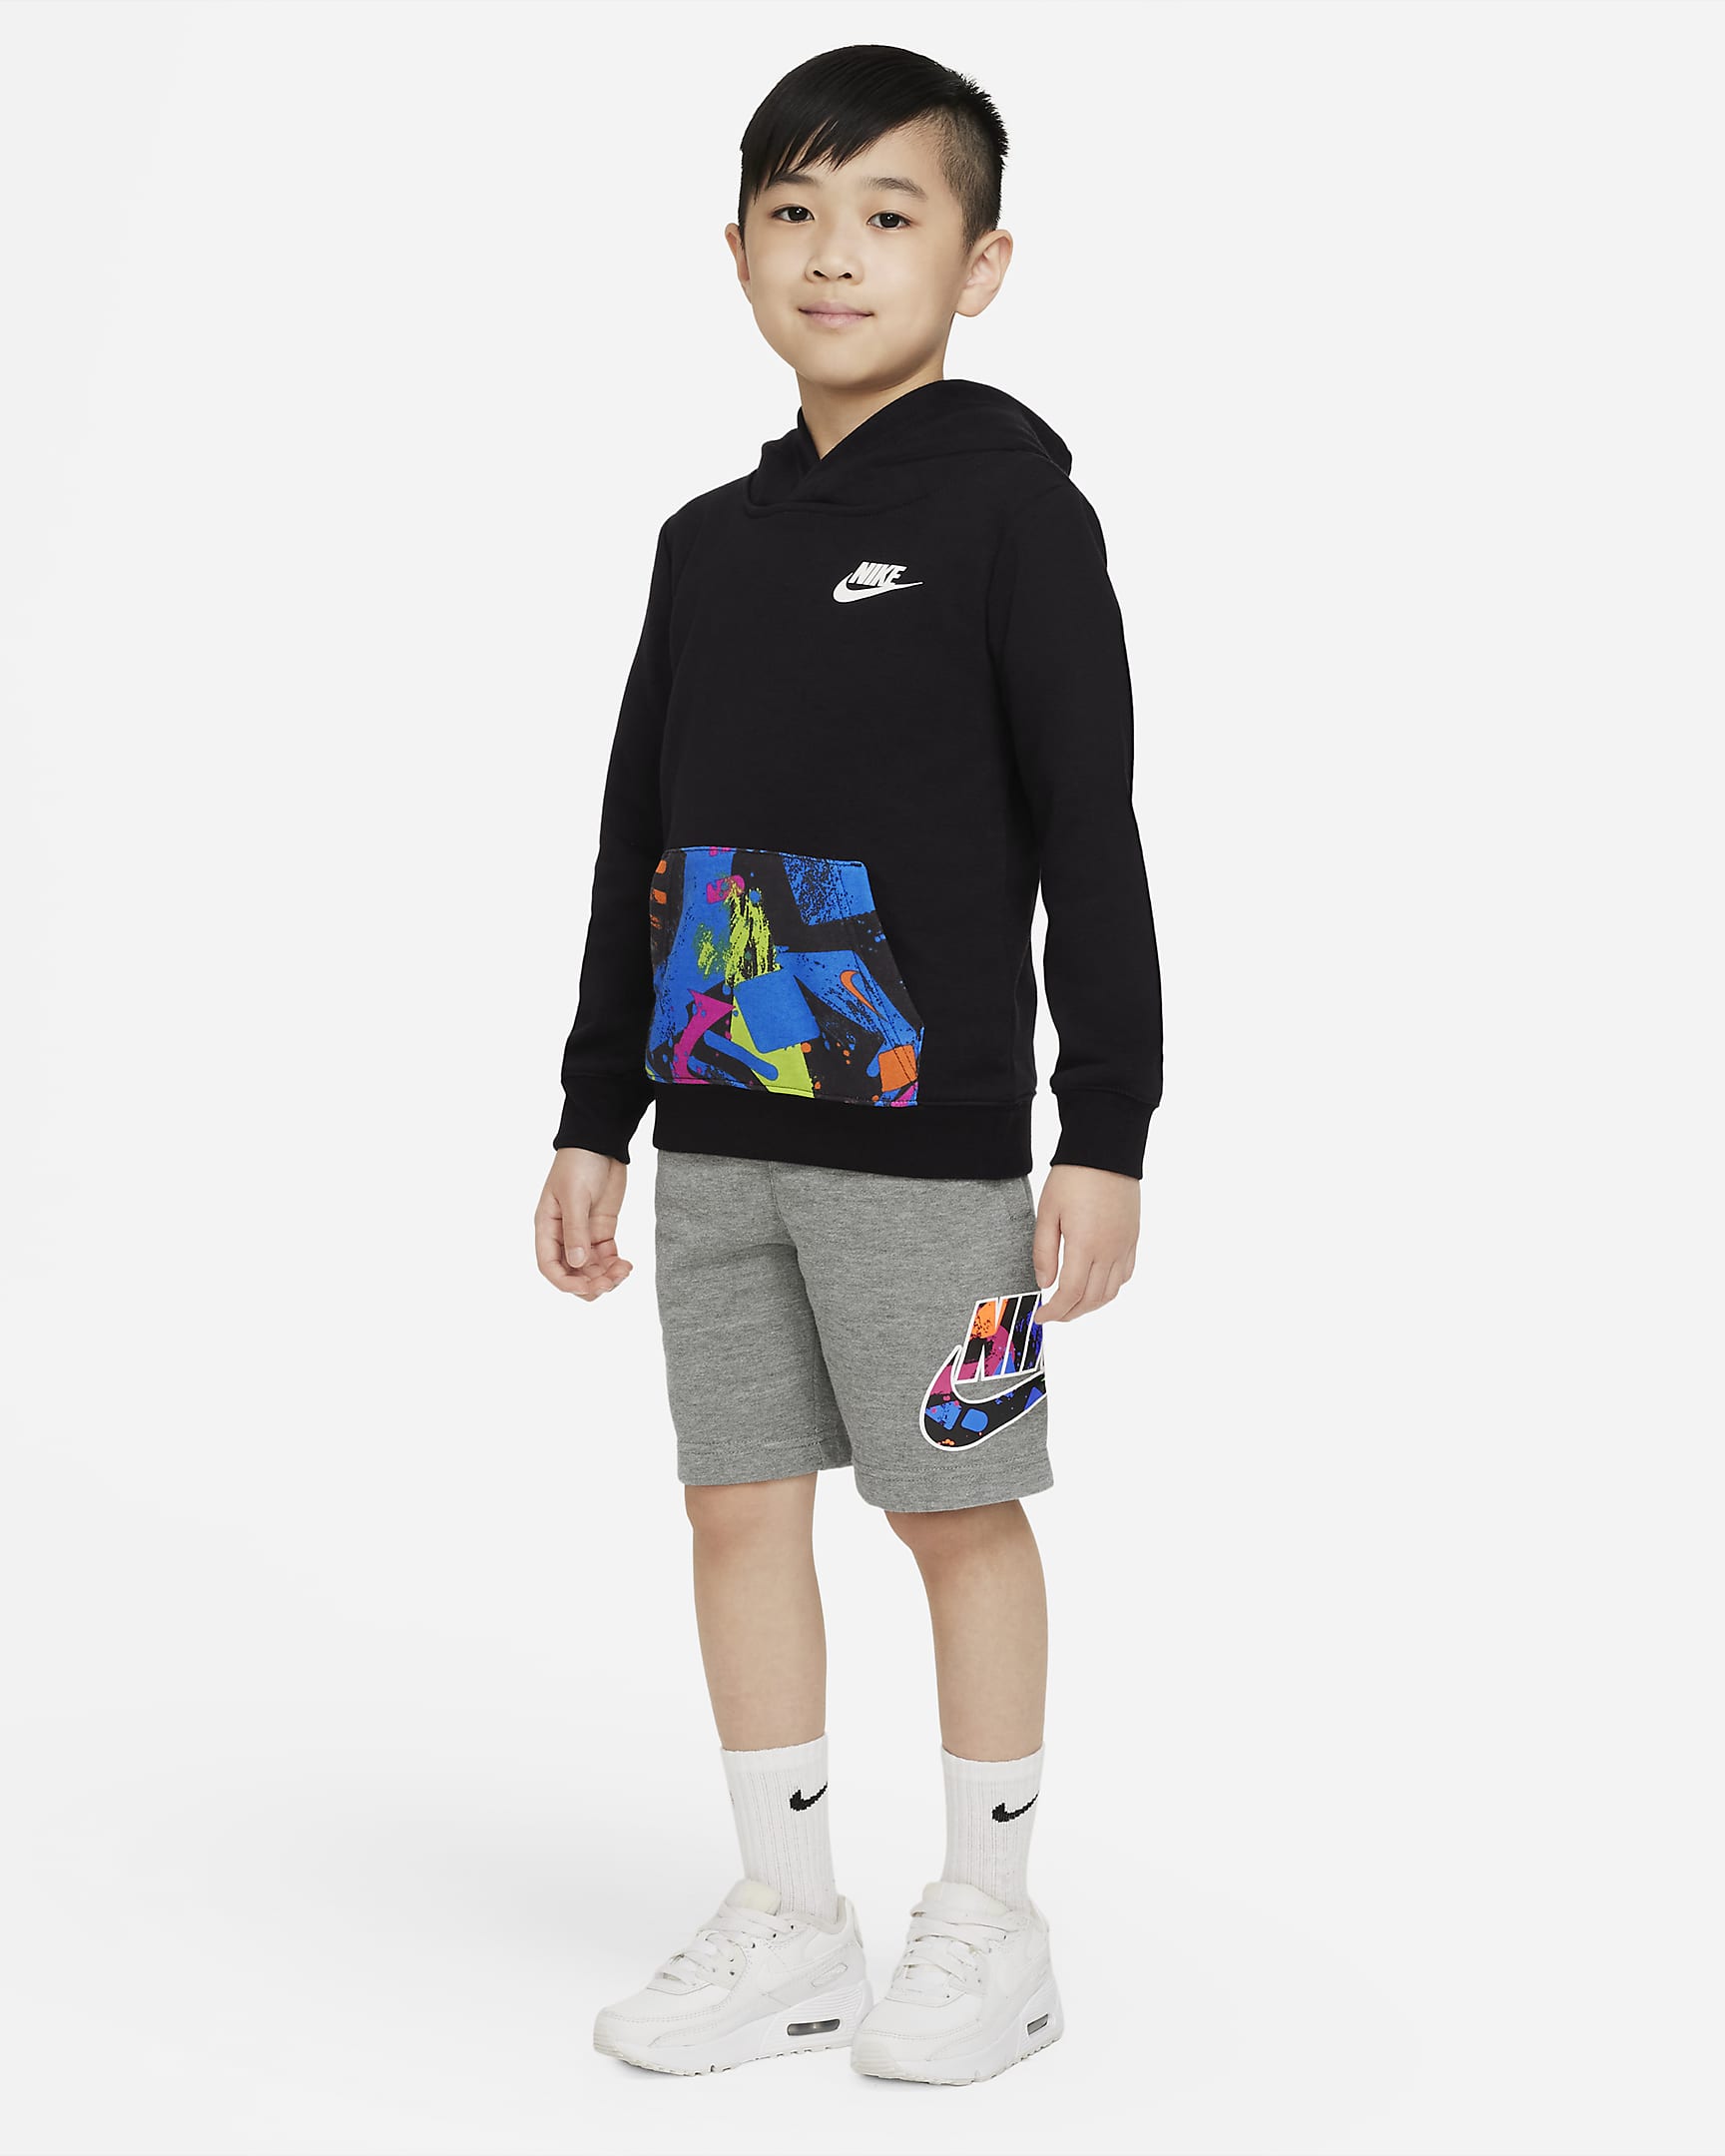 Nike Sportswear Little Kids' Shorts. Nike.com